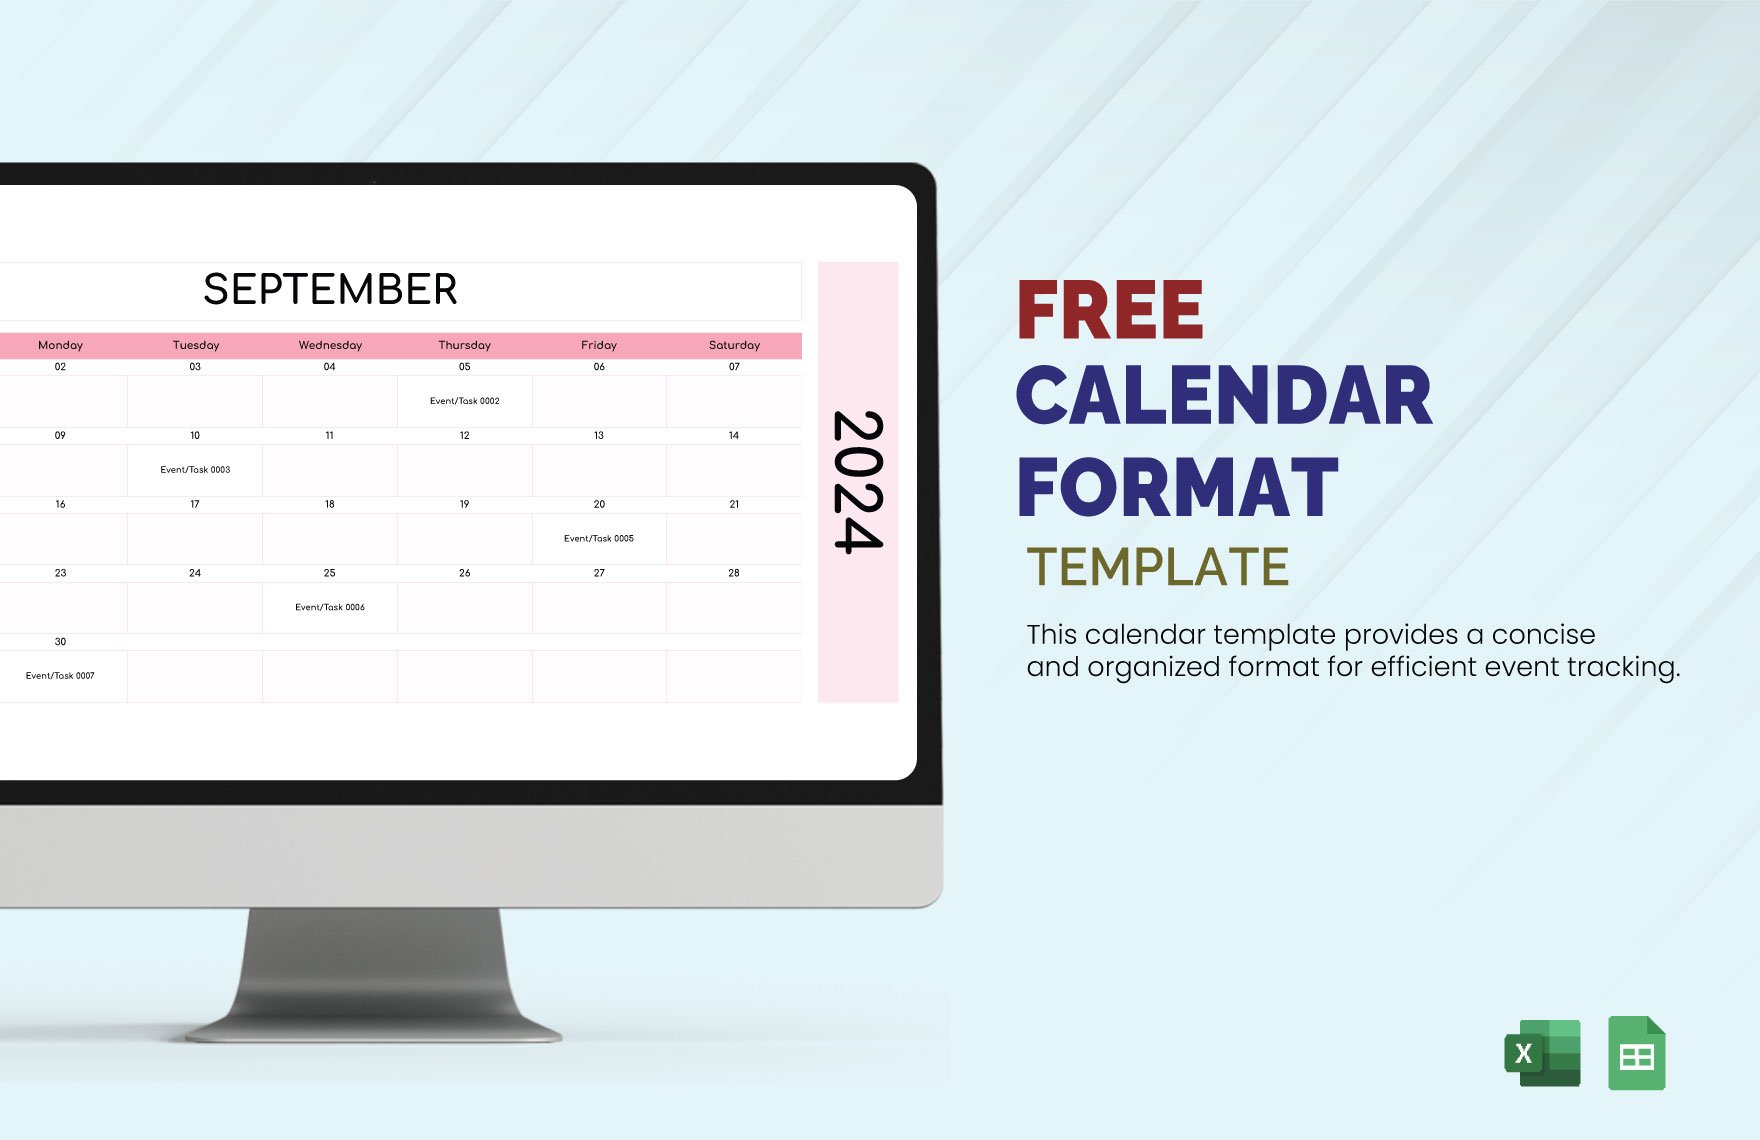 Calendar Format Template